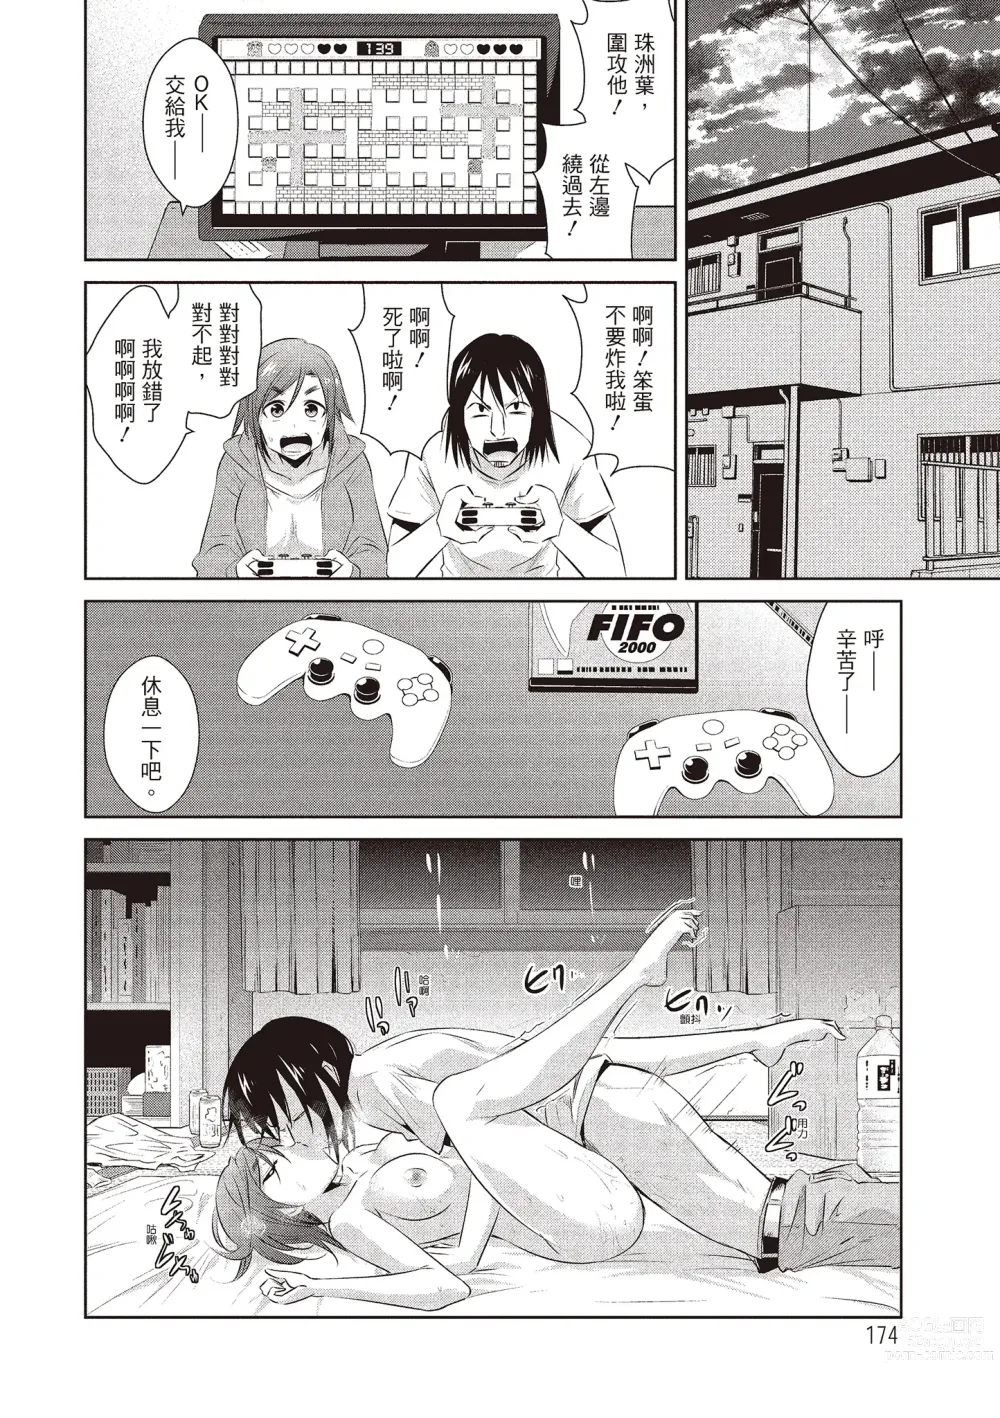 Page 176 of manga 朋友間的淫事